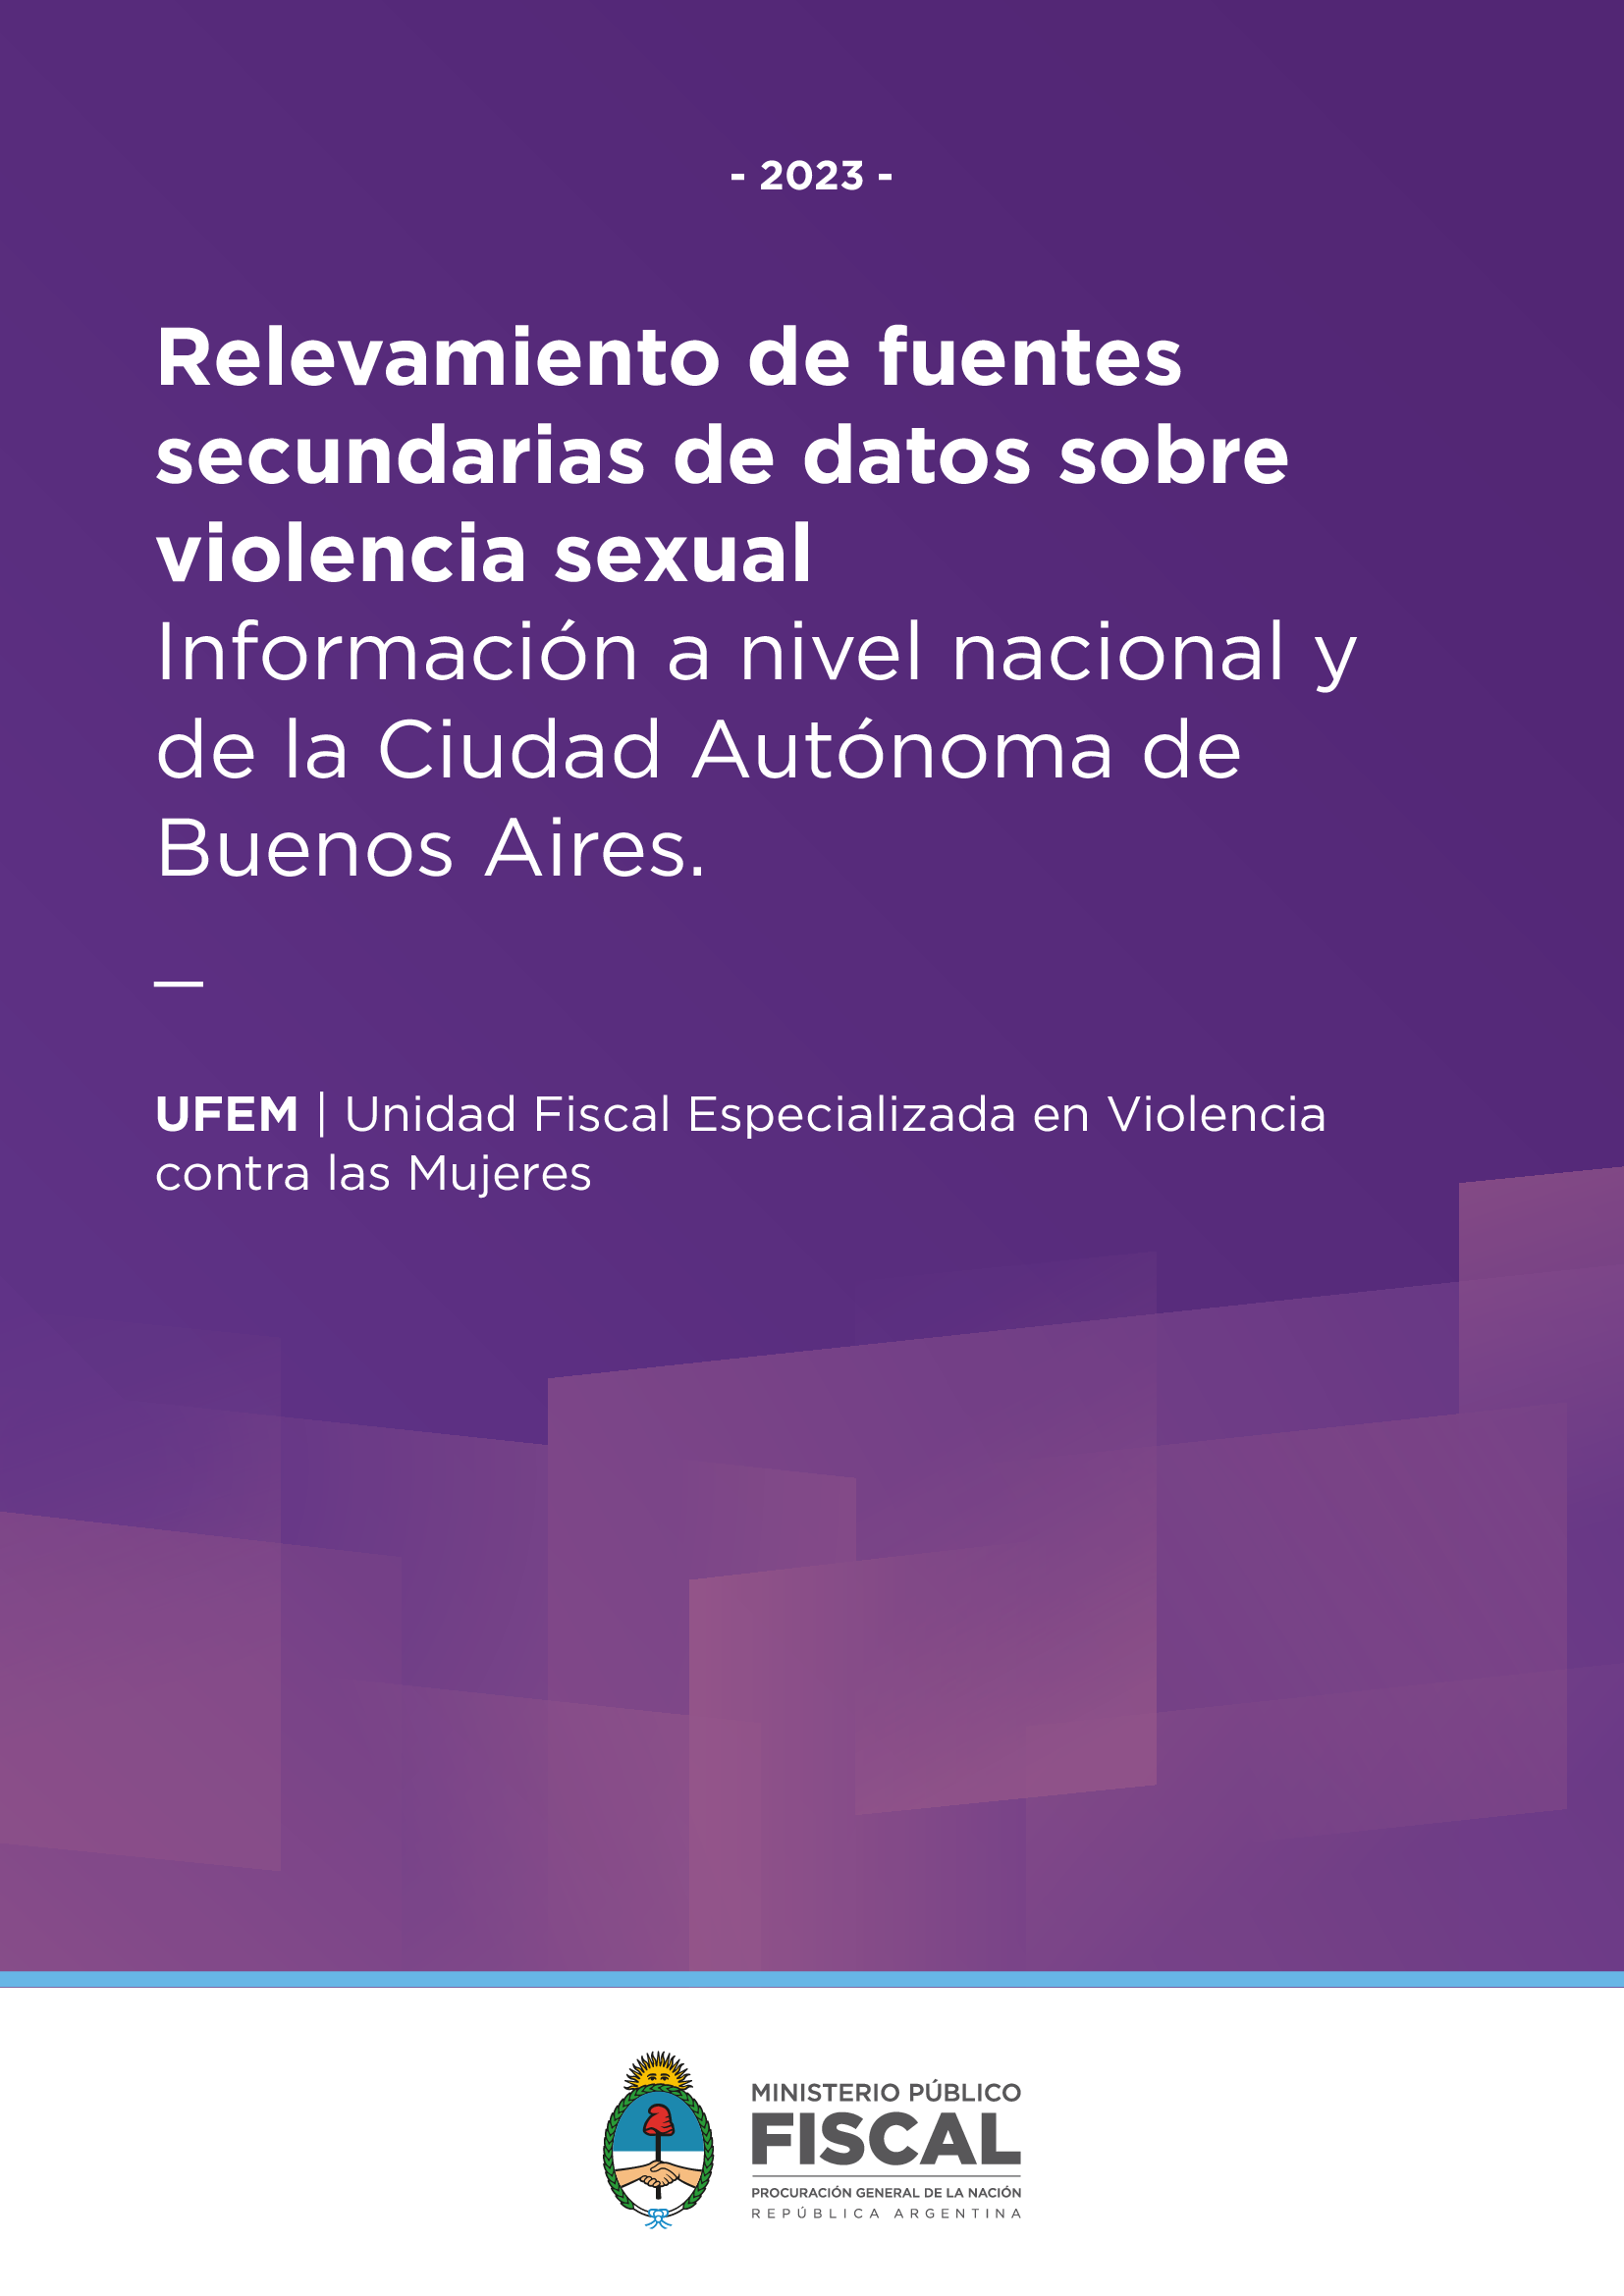 Relevamiento de fuentes secundarias de datos sobre violencia sexual a nivel país y en la Ciudad Autónoma de Buenos Aires